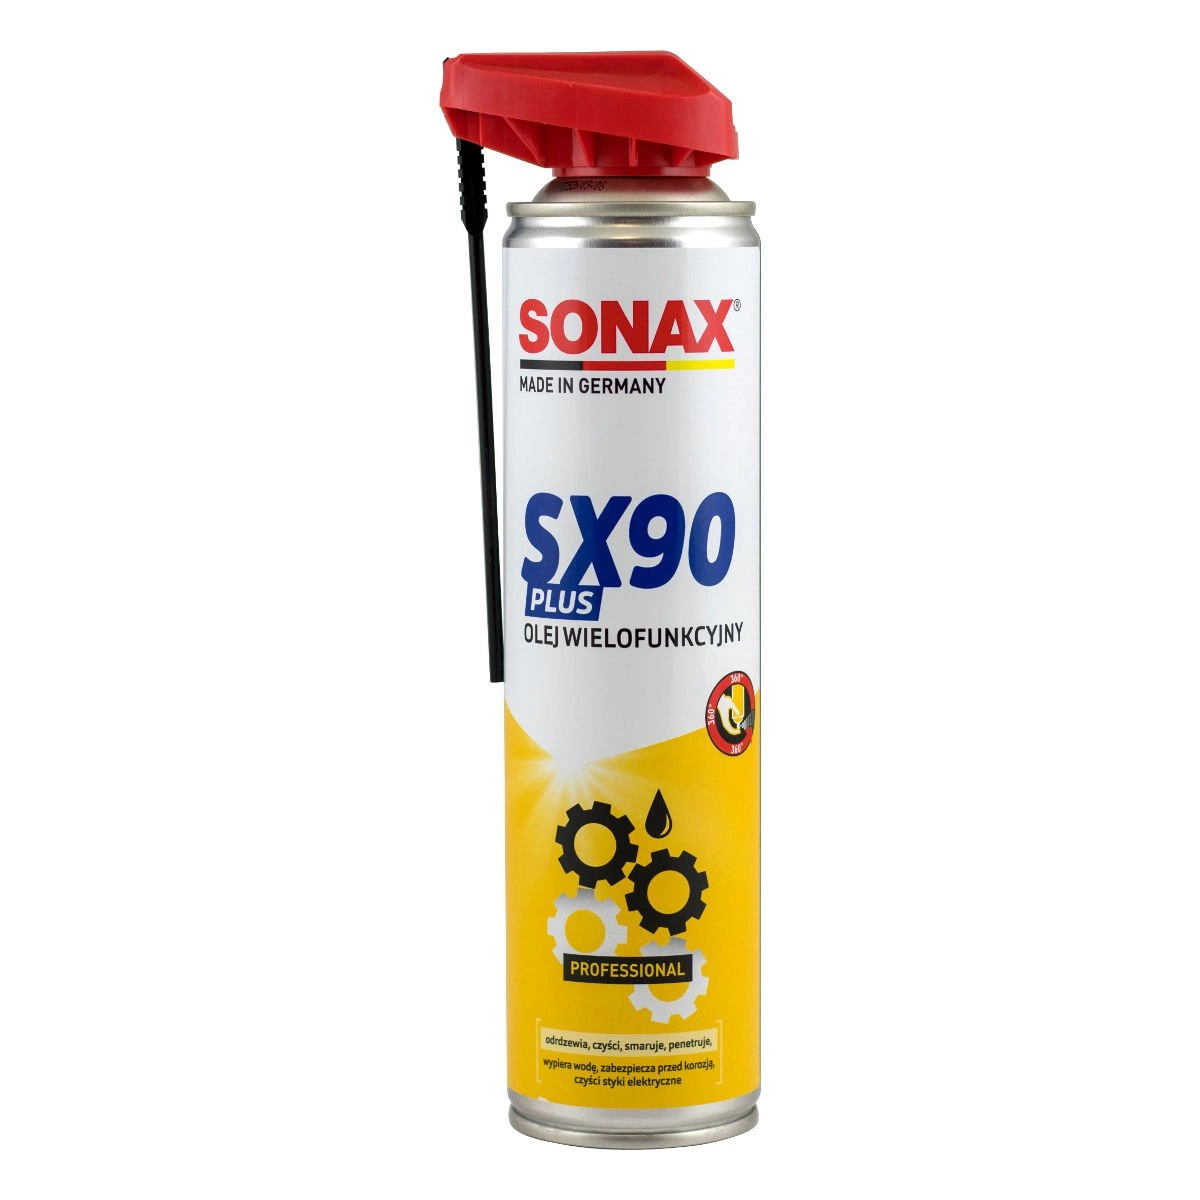 Sonax Professional SX90 Plus olej - odrdzewiacz w sprayu 400ml